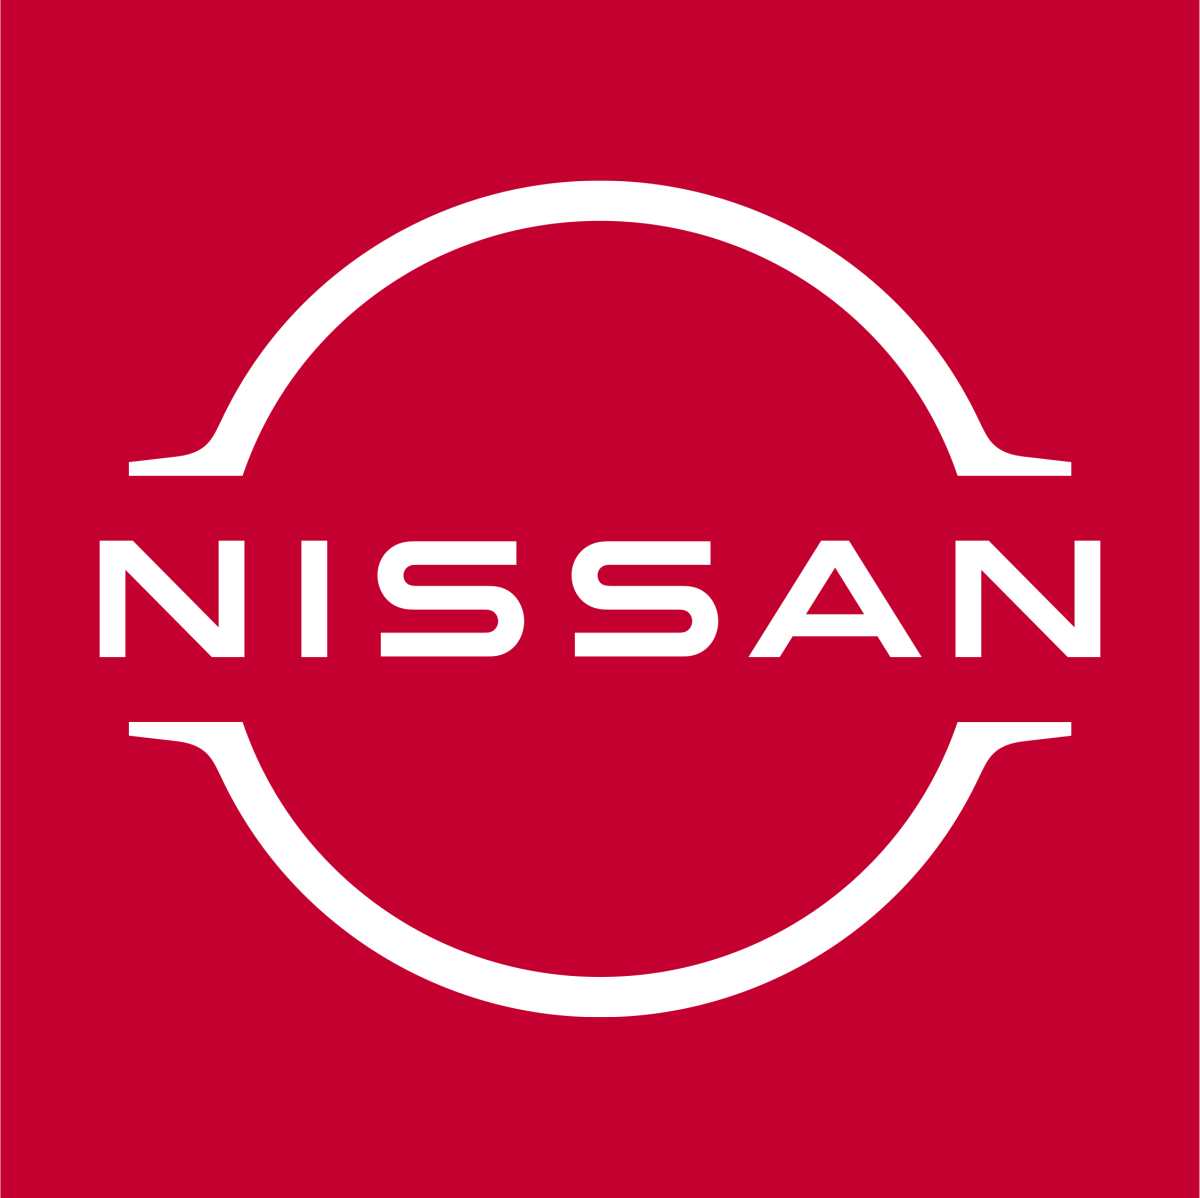 Nissan rediseña su logotipo y apunta hacia nuevos horizontes